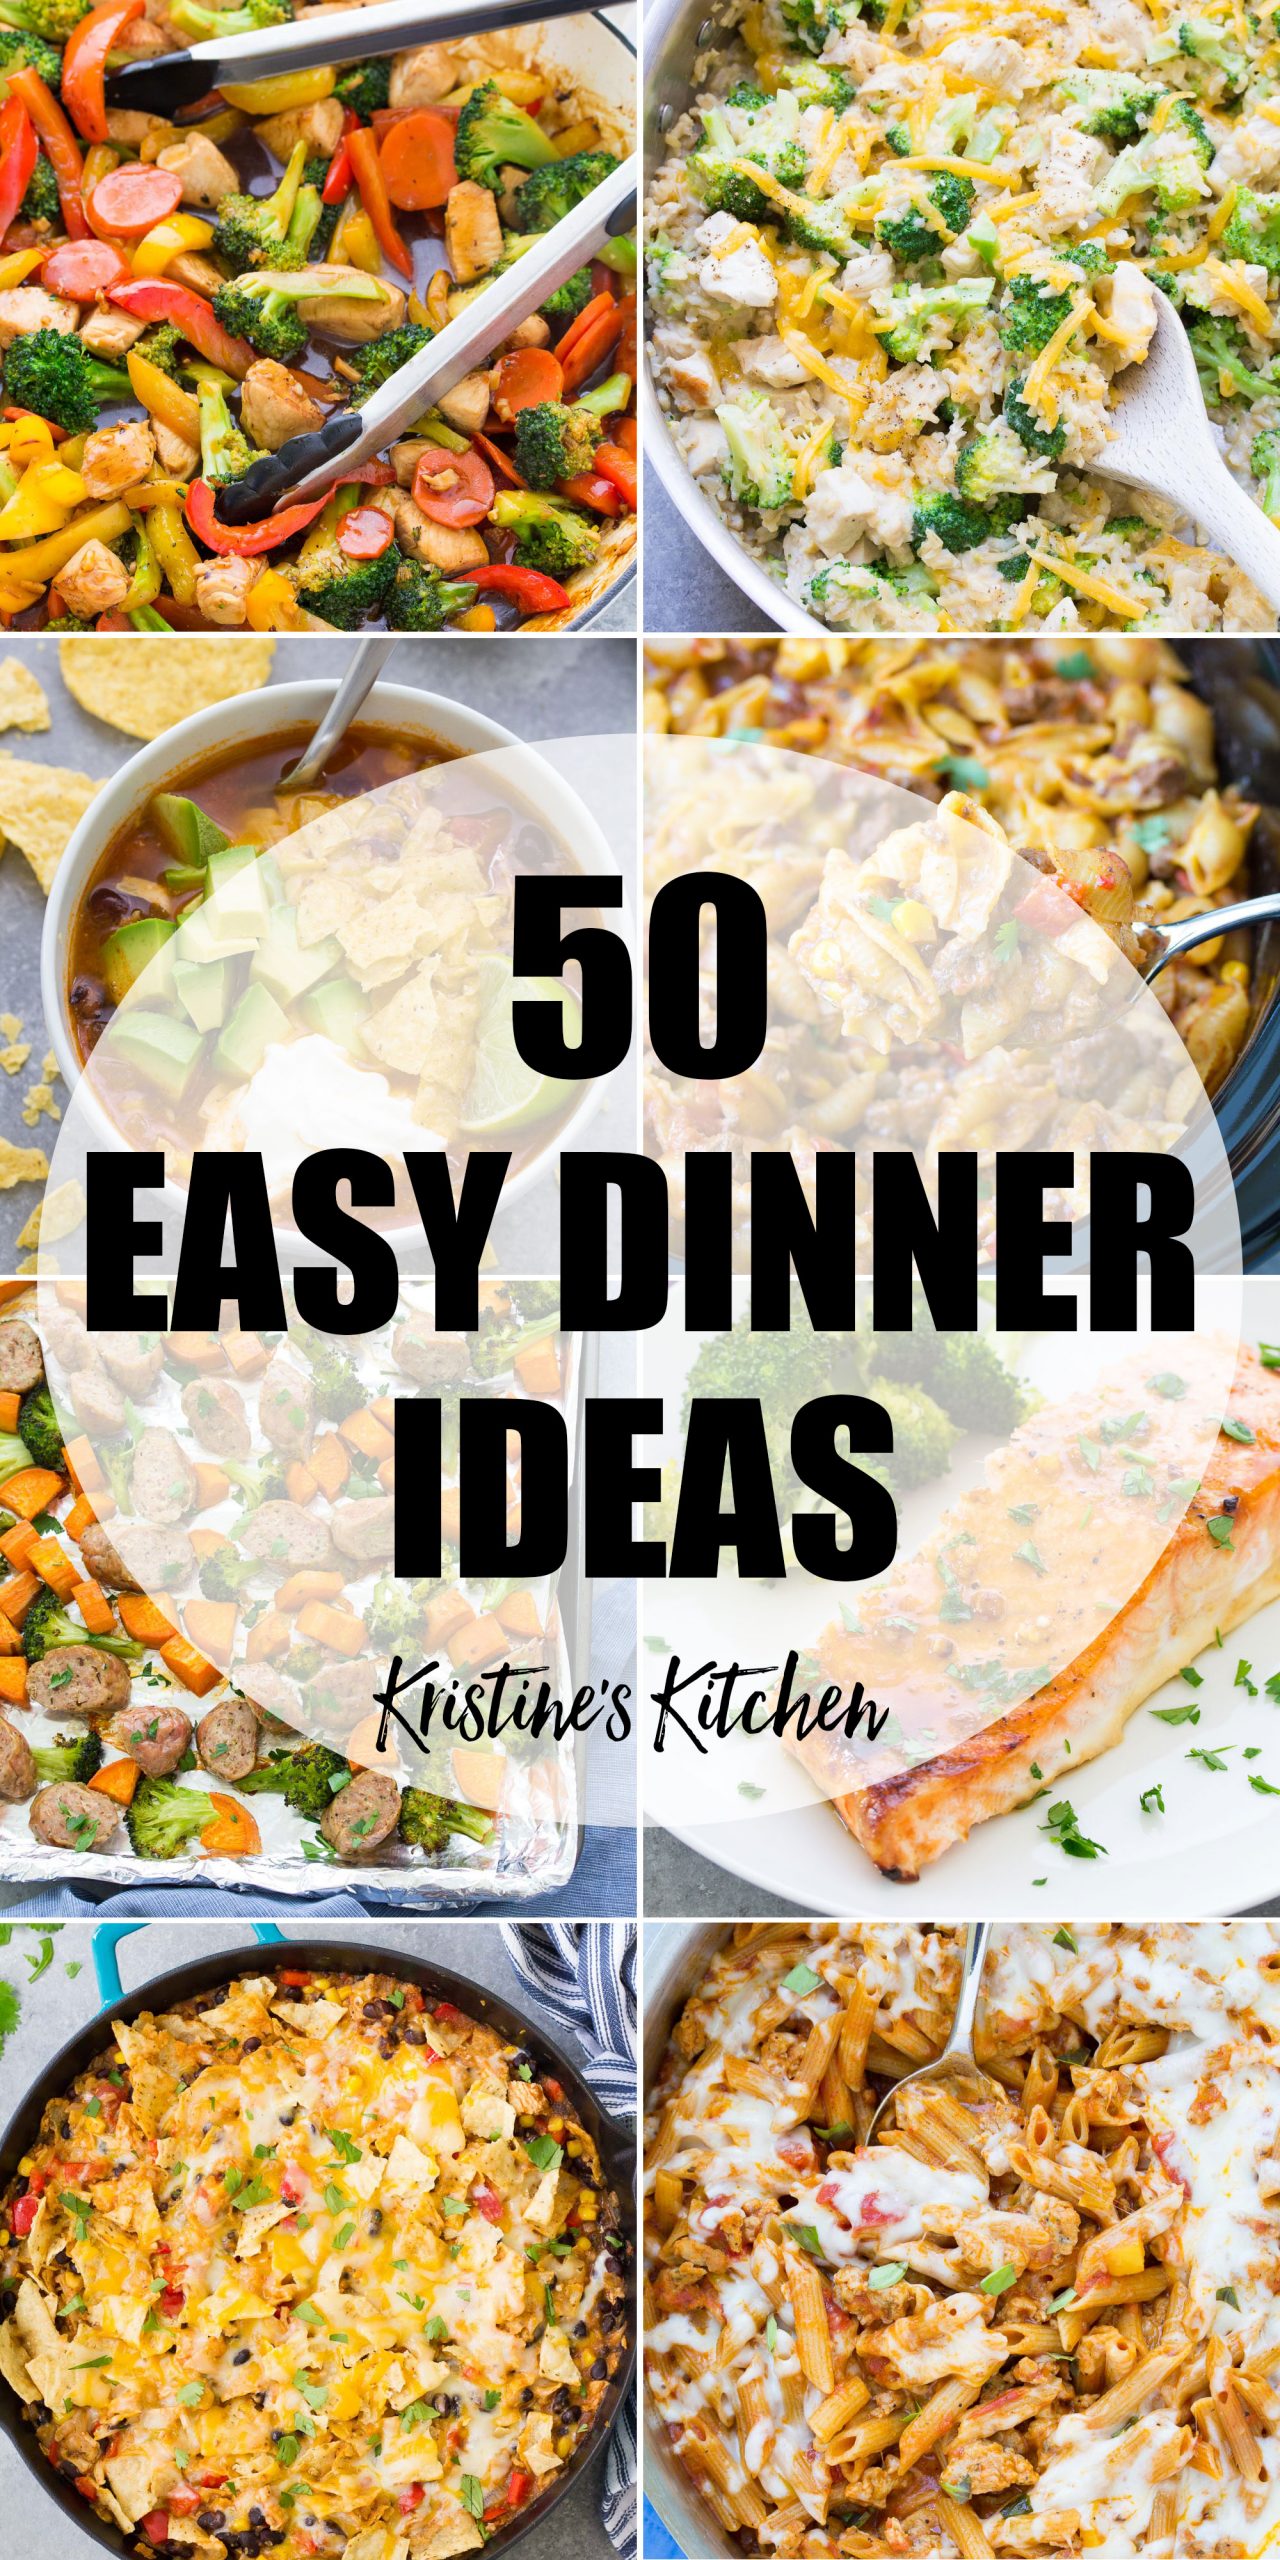 50 EASY Dinner Ideas - Kristine's Kitchen